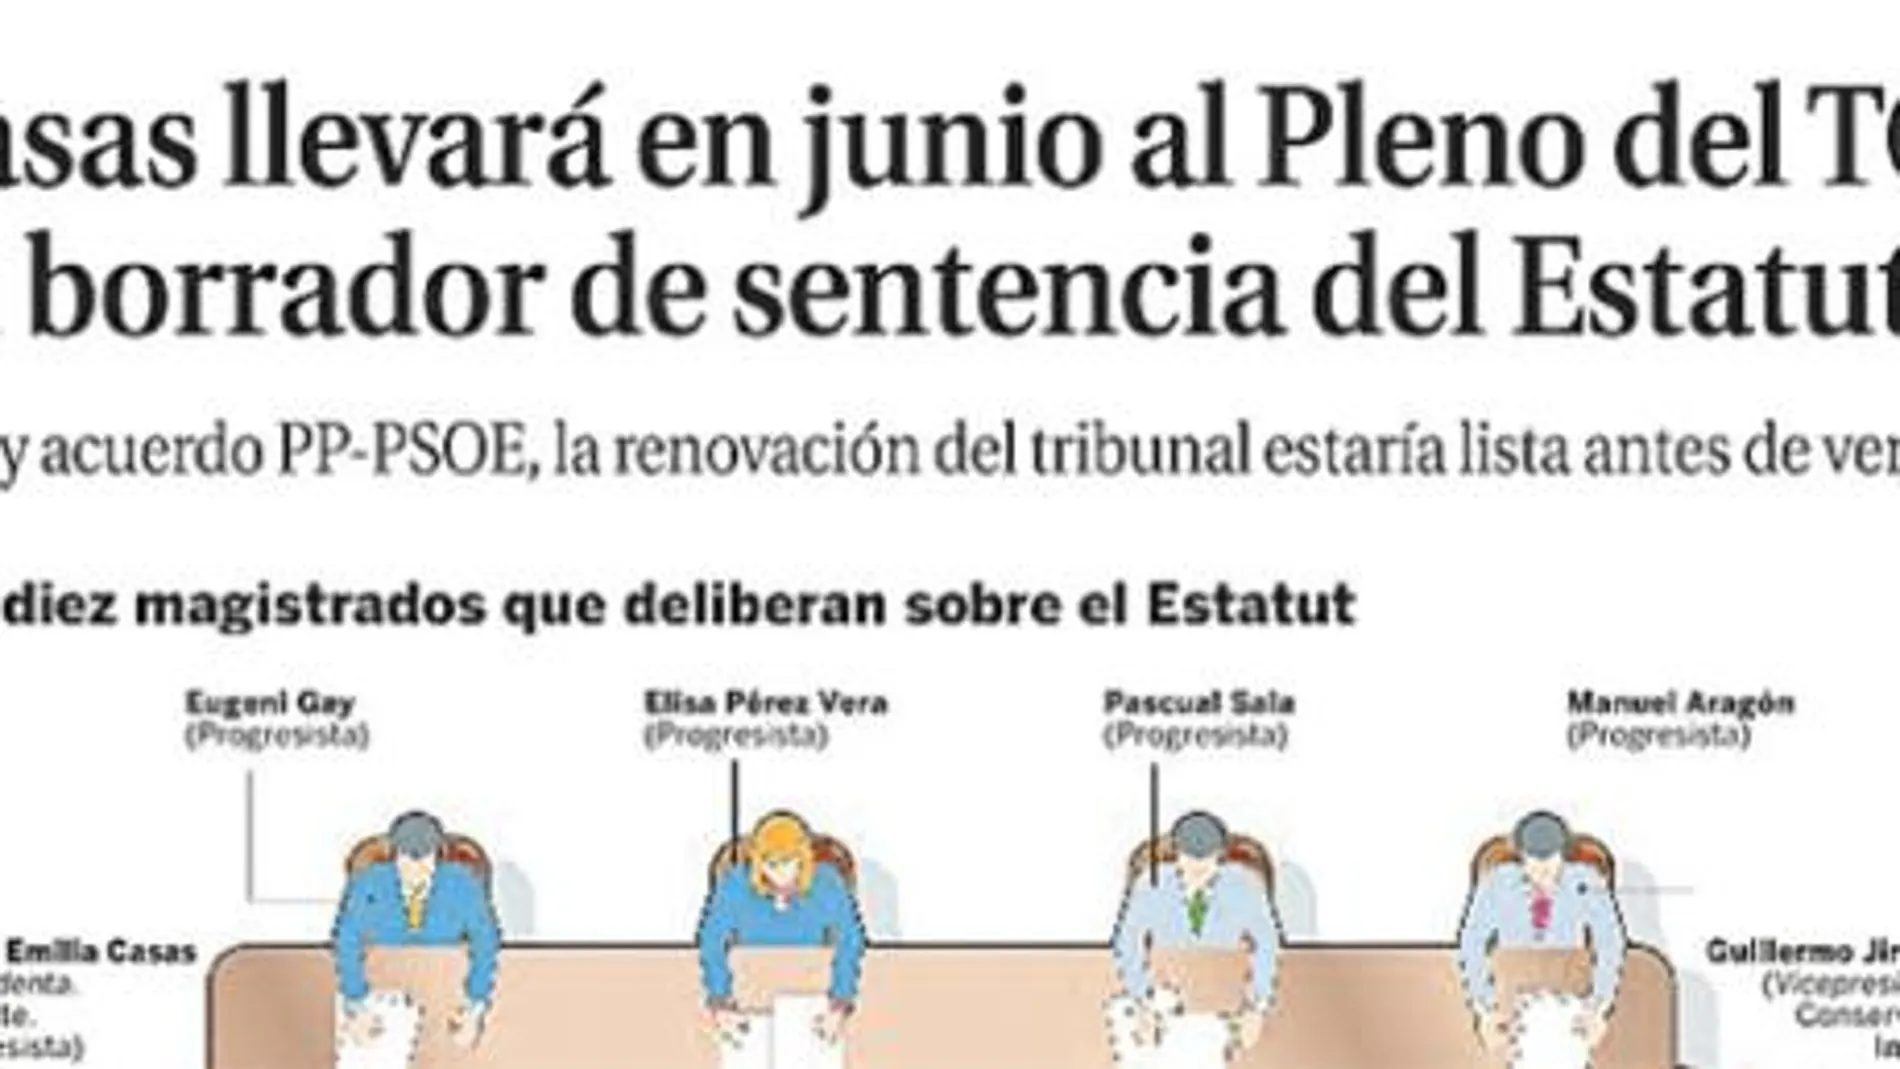 LA RAZÓN ya publicó el pasado 25 de mayo que María Emilia Casas llevaría en junio al Pleno del TC su borrador de fallo al recurso del PP